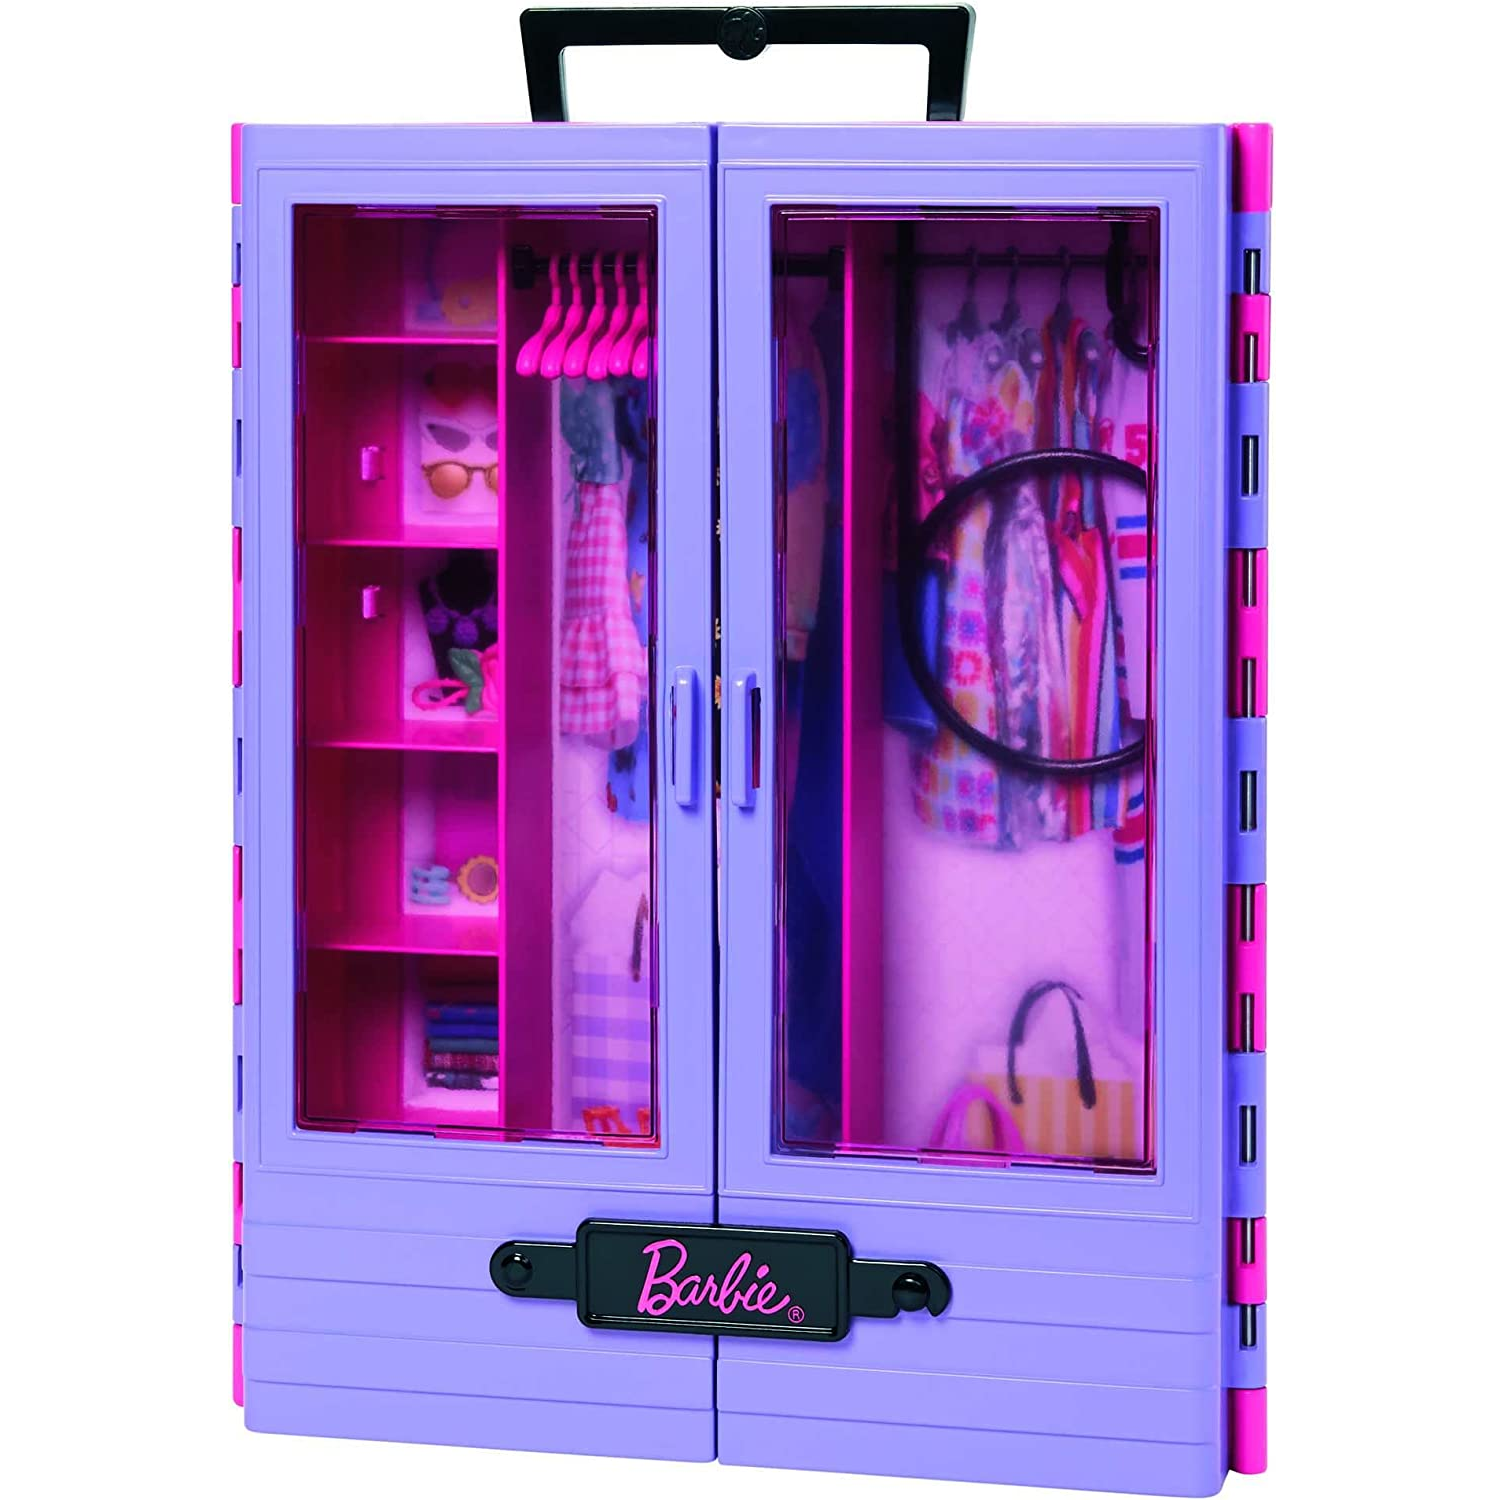 Barbie Closet de Luxo com Boneca, Mattel 